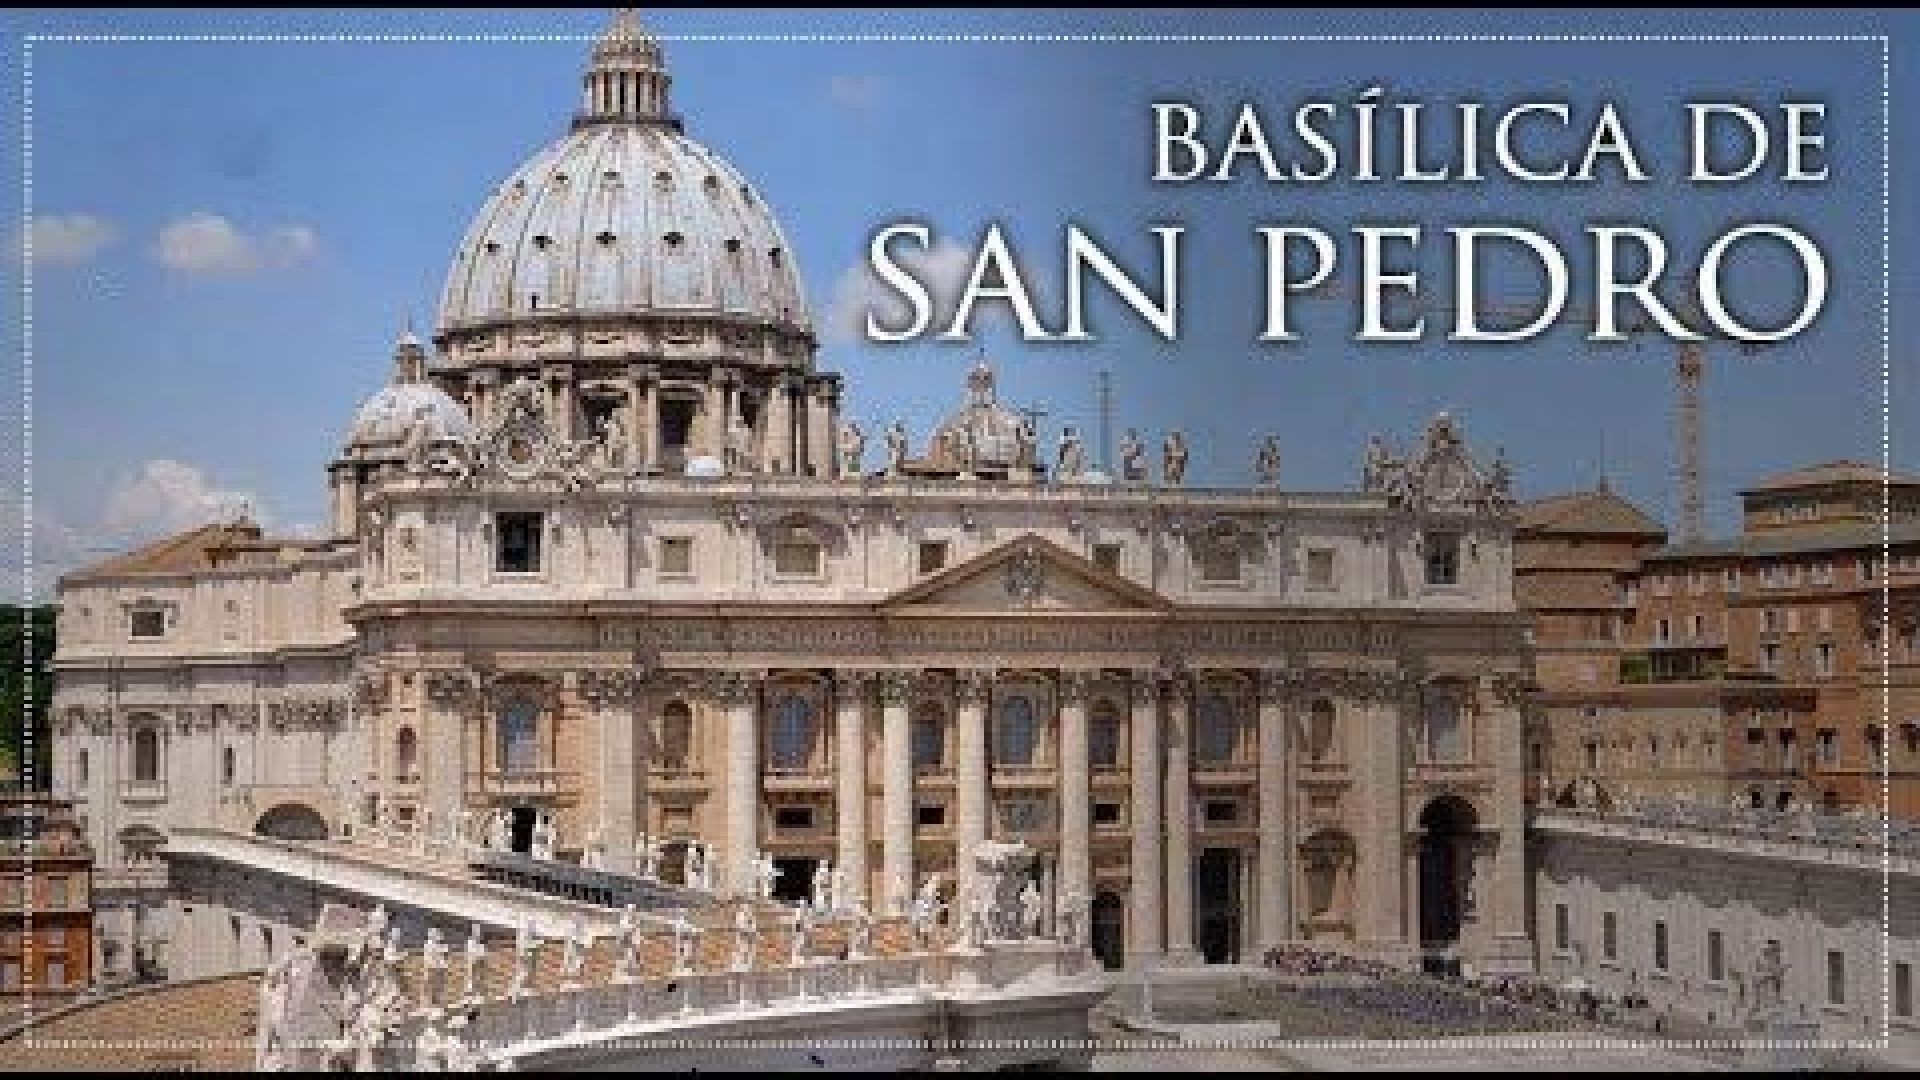 Ciudades secretas: La basilica de San Pedro del Vaticano | Documental